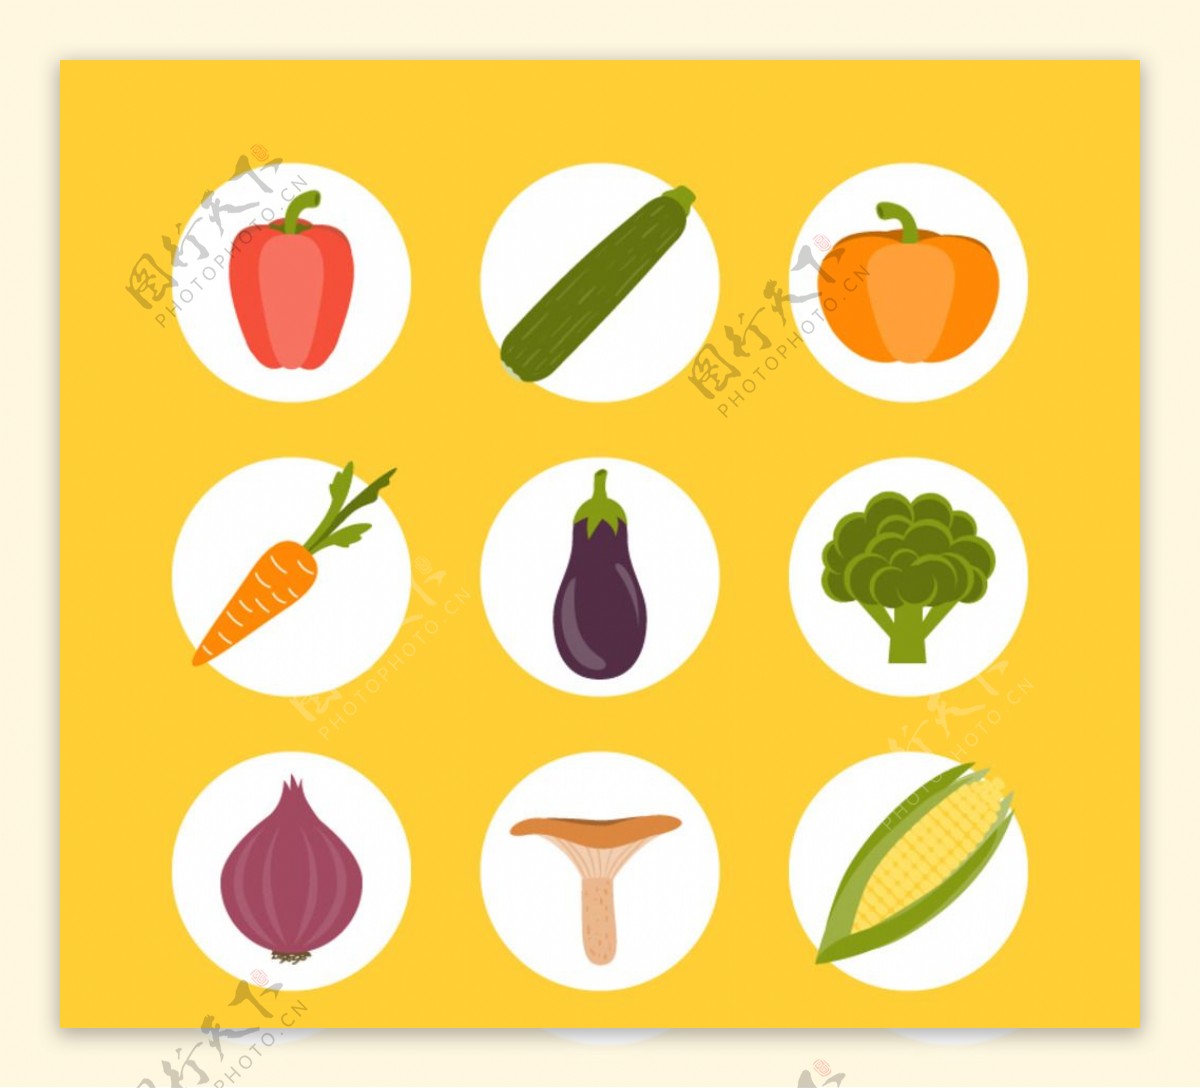 圆形蔬菜图标